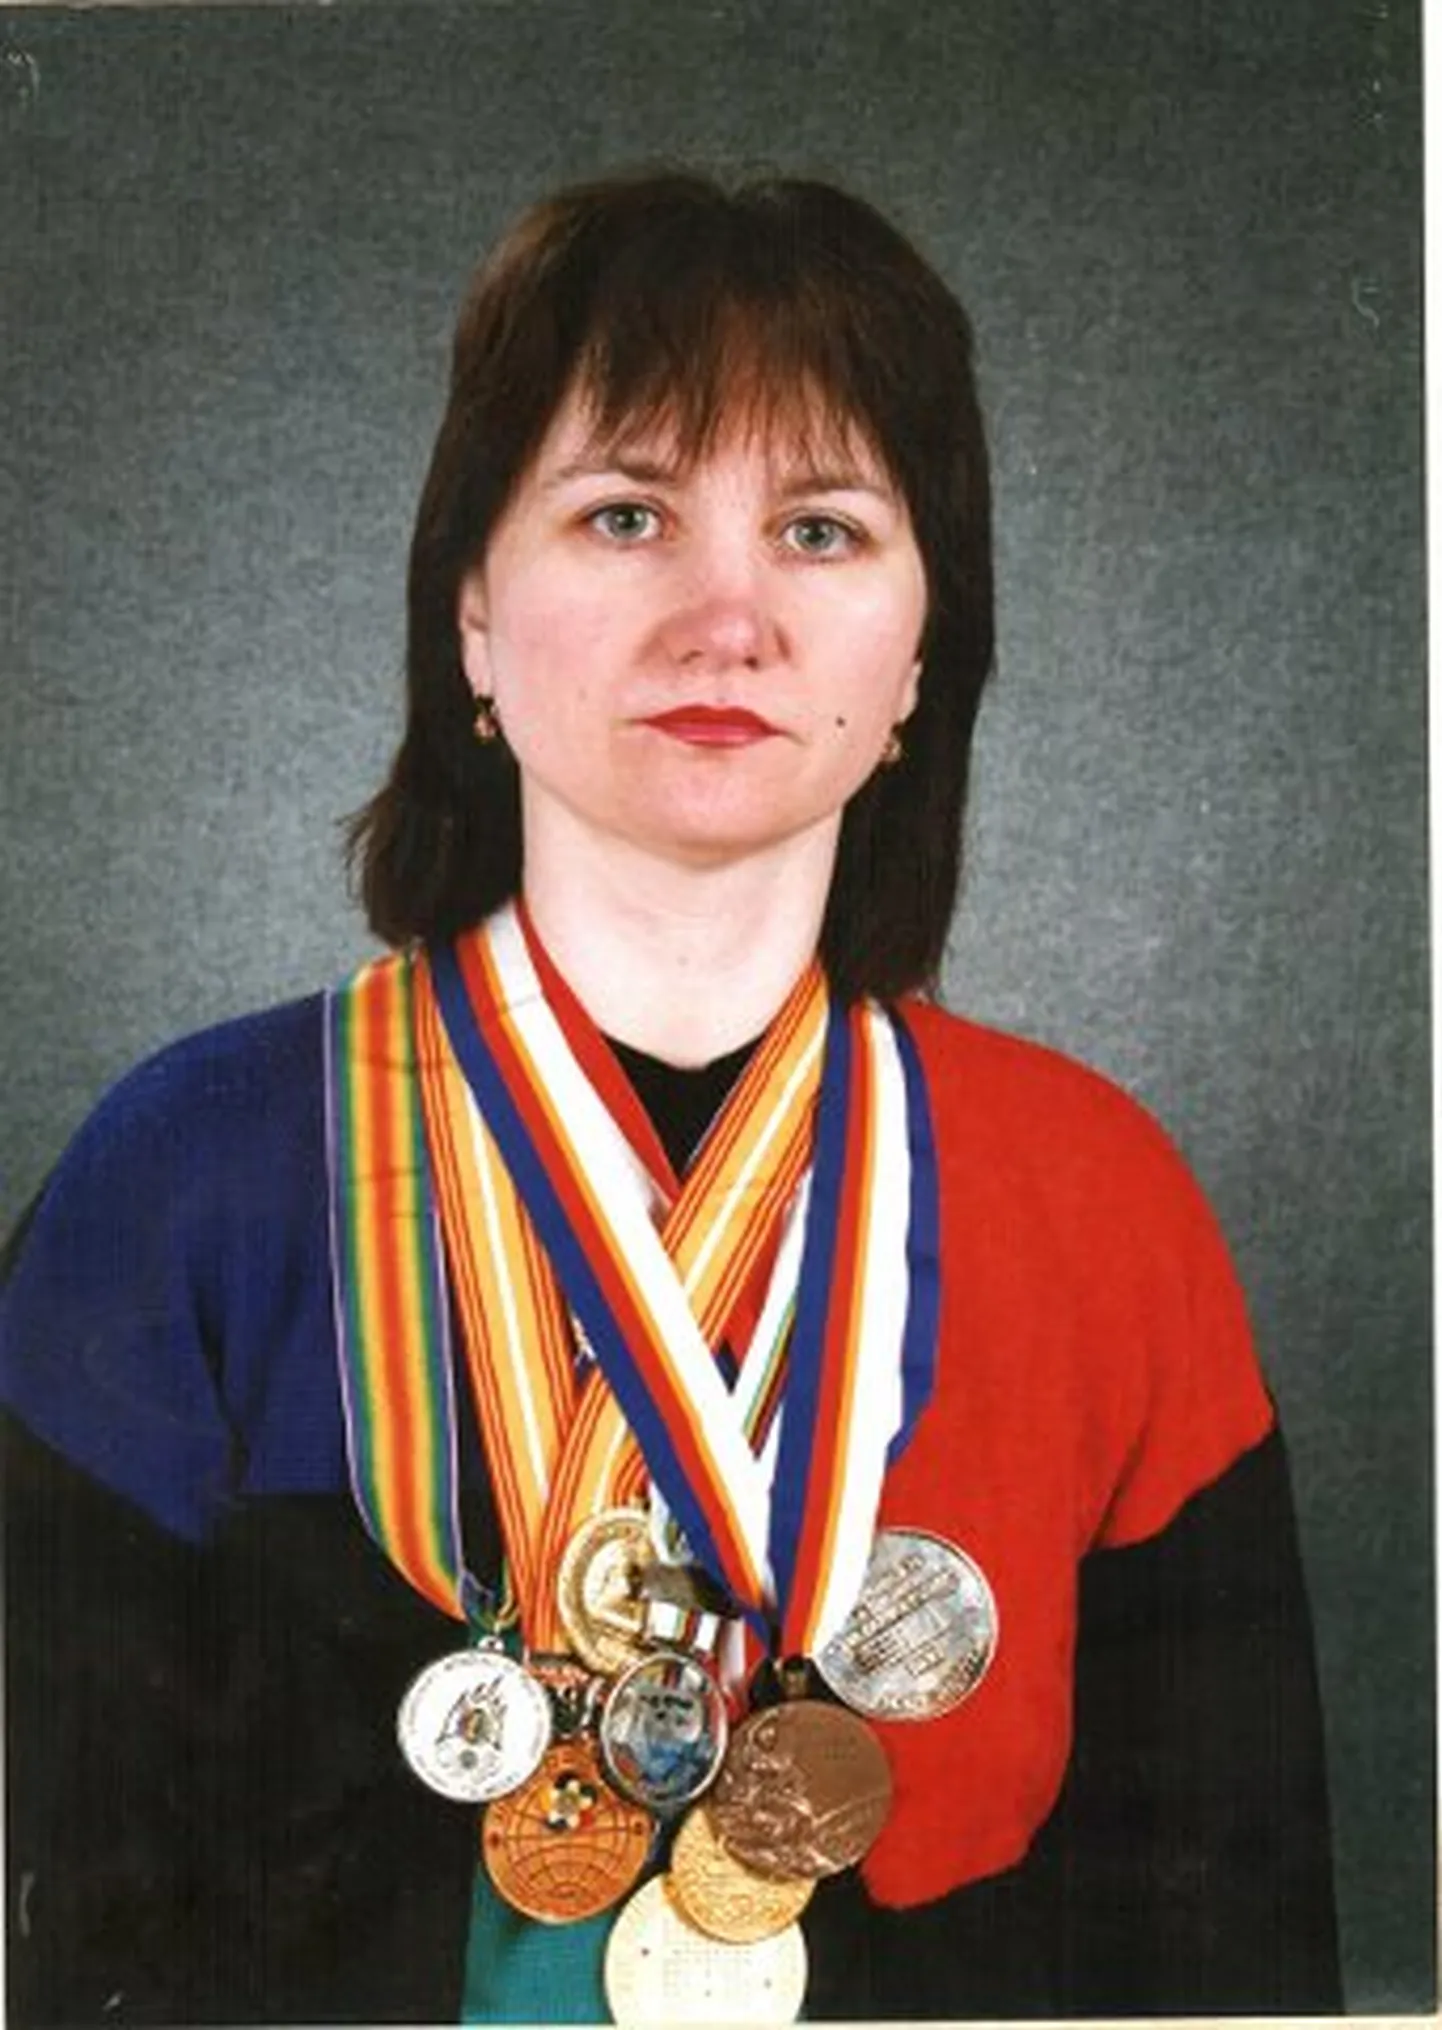 Narvas laskurikarjääri alustanud Valentina Tšerkassovast sai lõpuks üks selle ala maailma tipptegijaid.